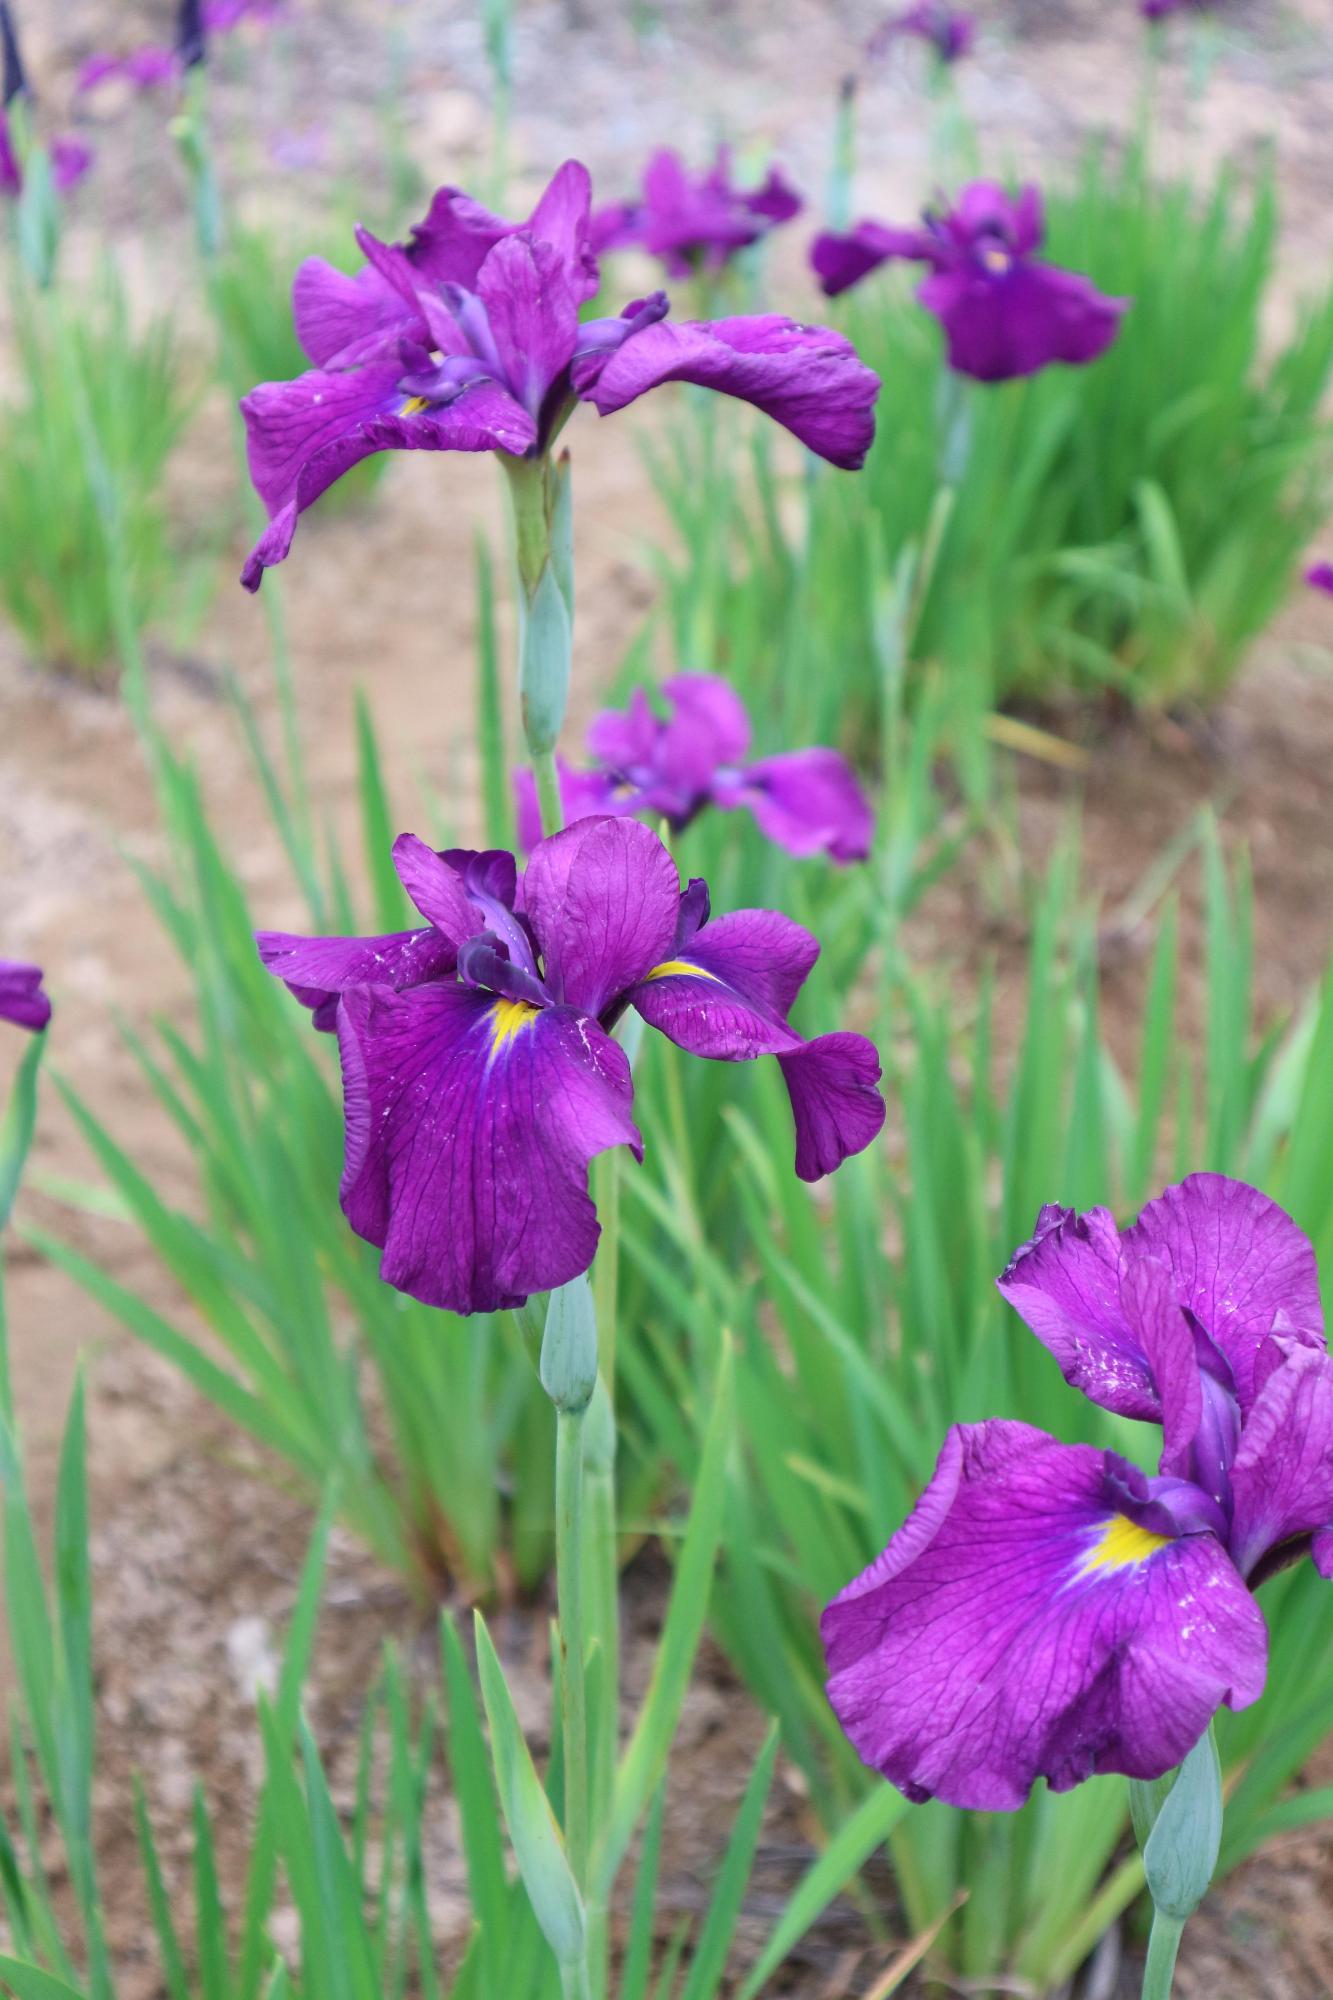 土の上に紫色の花が咲いている写真